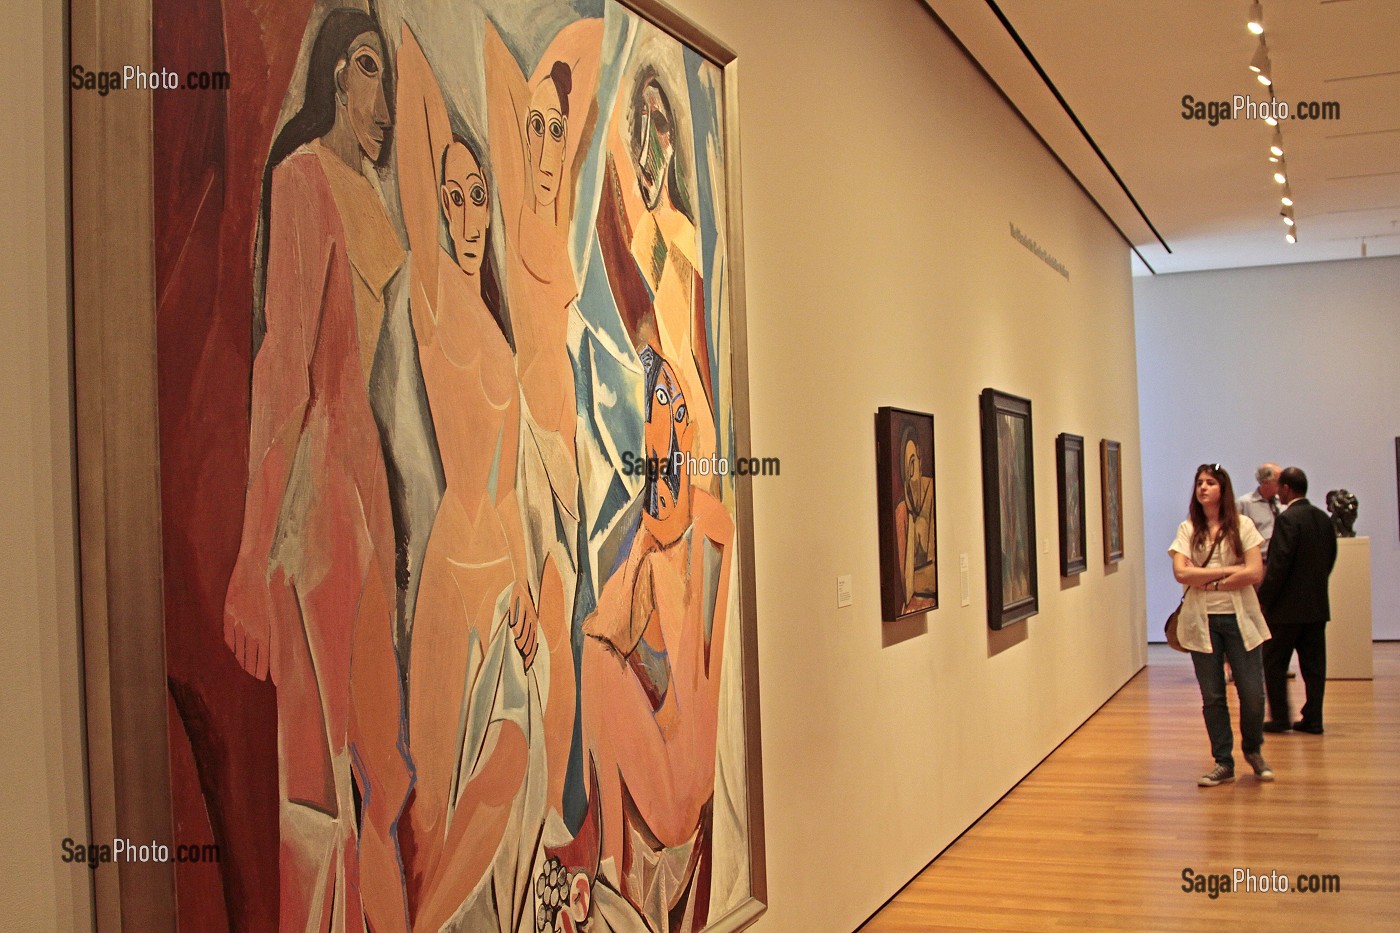 'LES DEMOISELLES D'AVIGNON', OEUVRE DE PABLO PICASSO (1881-1973), MOMA (MUSEUM OF MODERN ART), MUSEE D'ART MODERNE, QUARTIER DE MIDTOWN, MANHATTAN, NEW YORK CITY, ETAT DE NEW YORK, ETATS-UNIS 